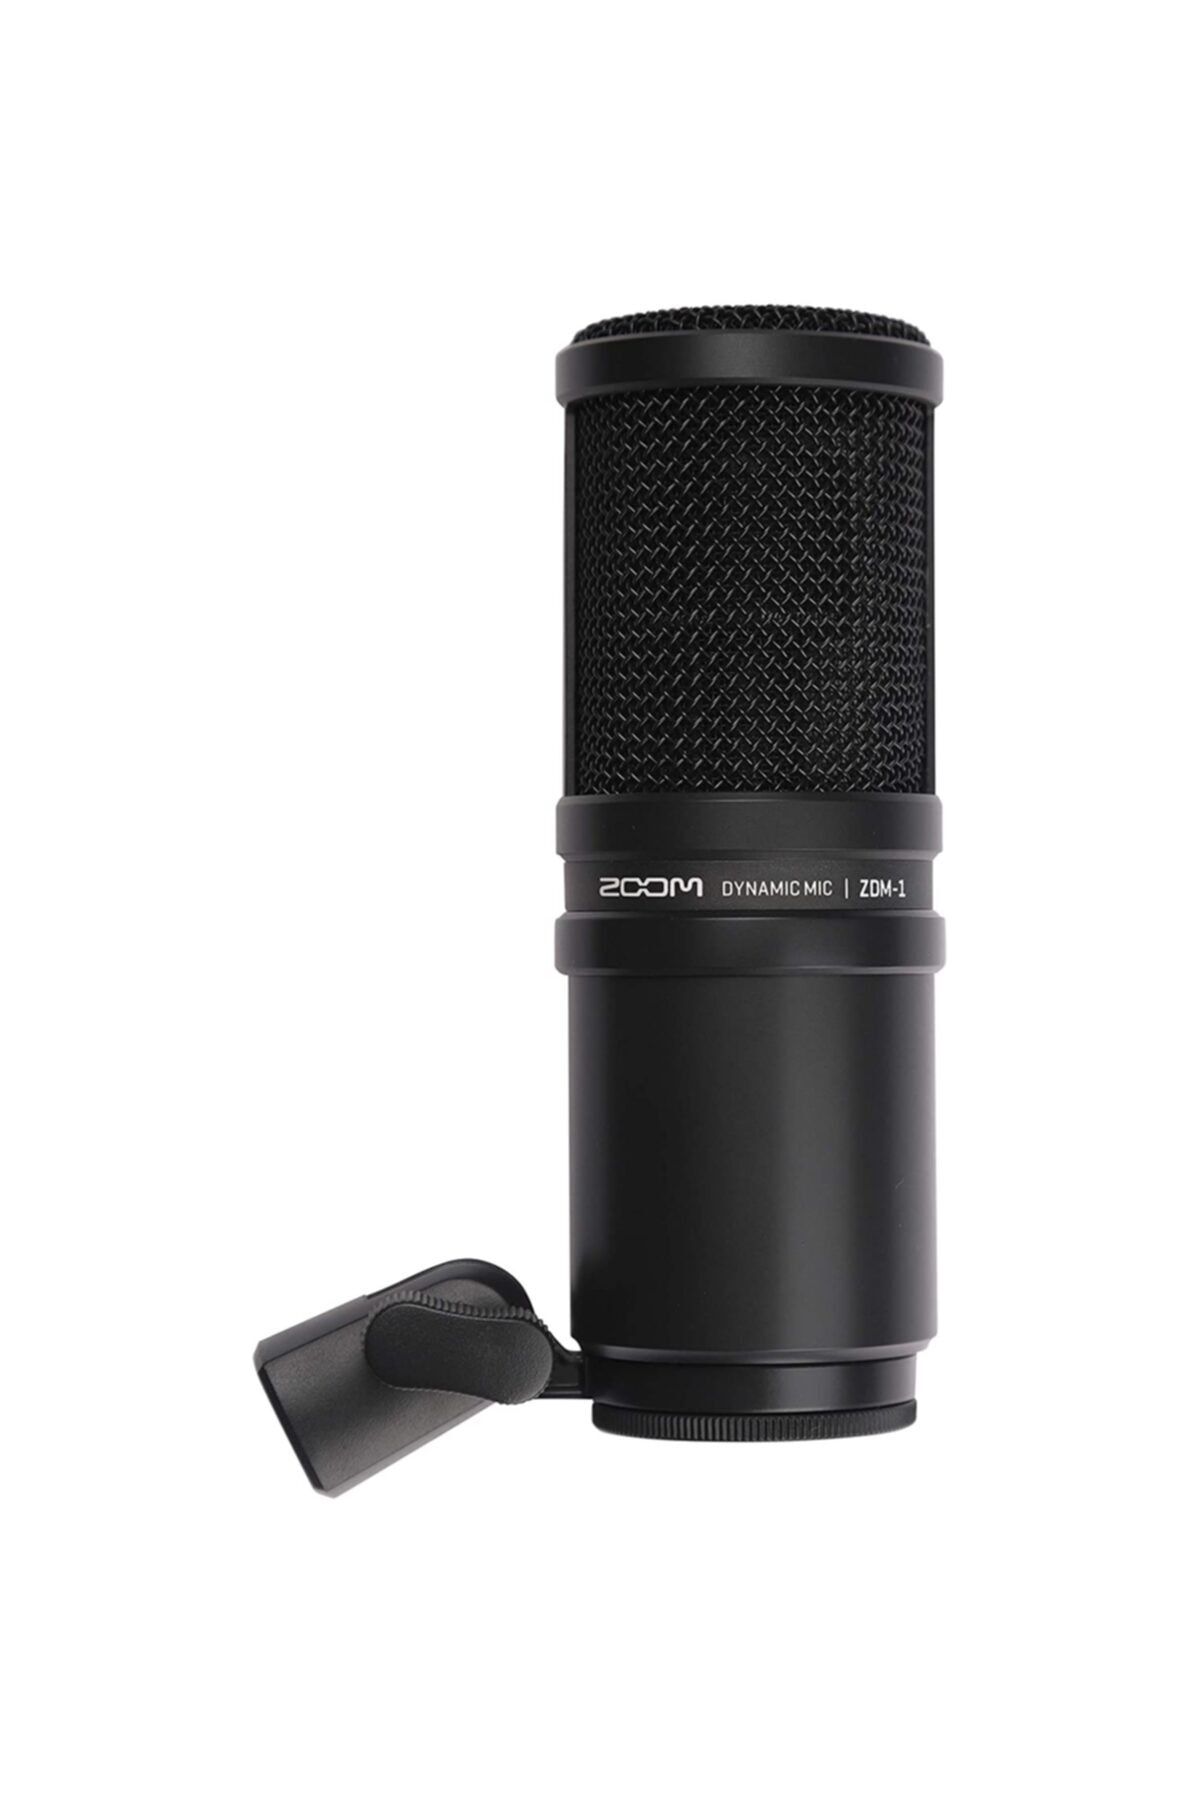 Zoom Zdm-1 Podcast Dynamic Mikrofon